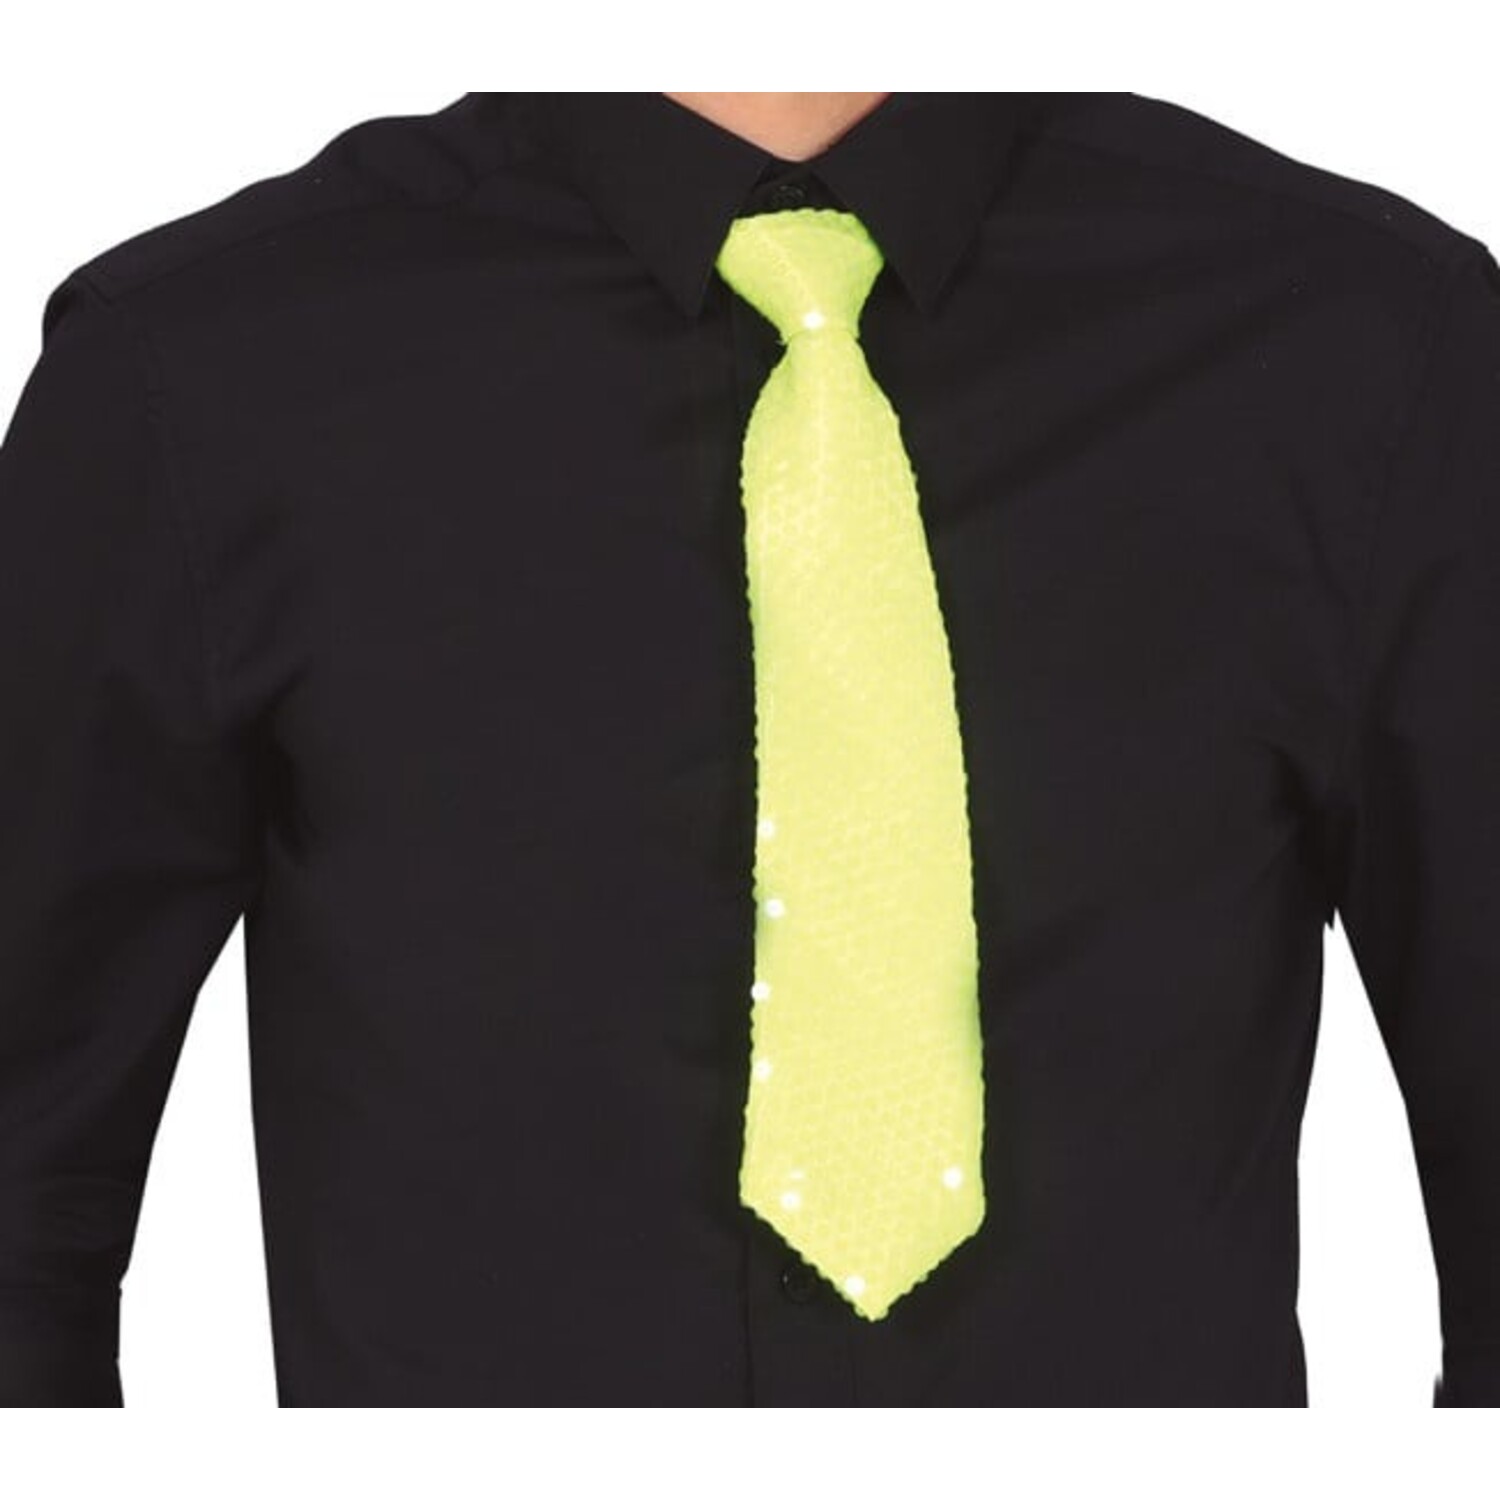 Cravate jaune fluo pailletée 37cm - Partywinkel